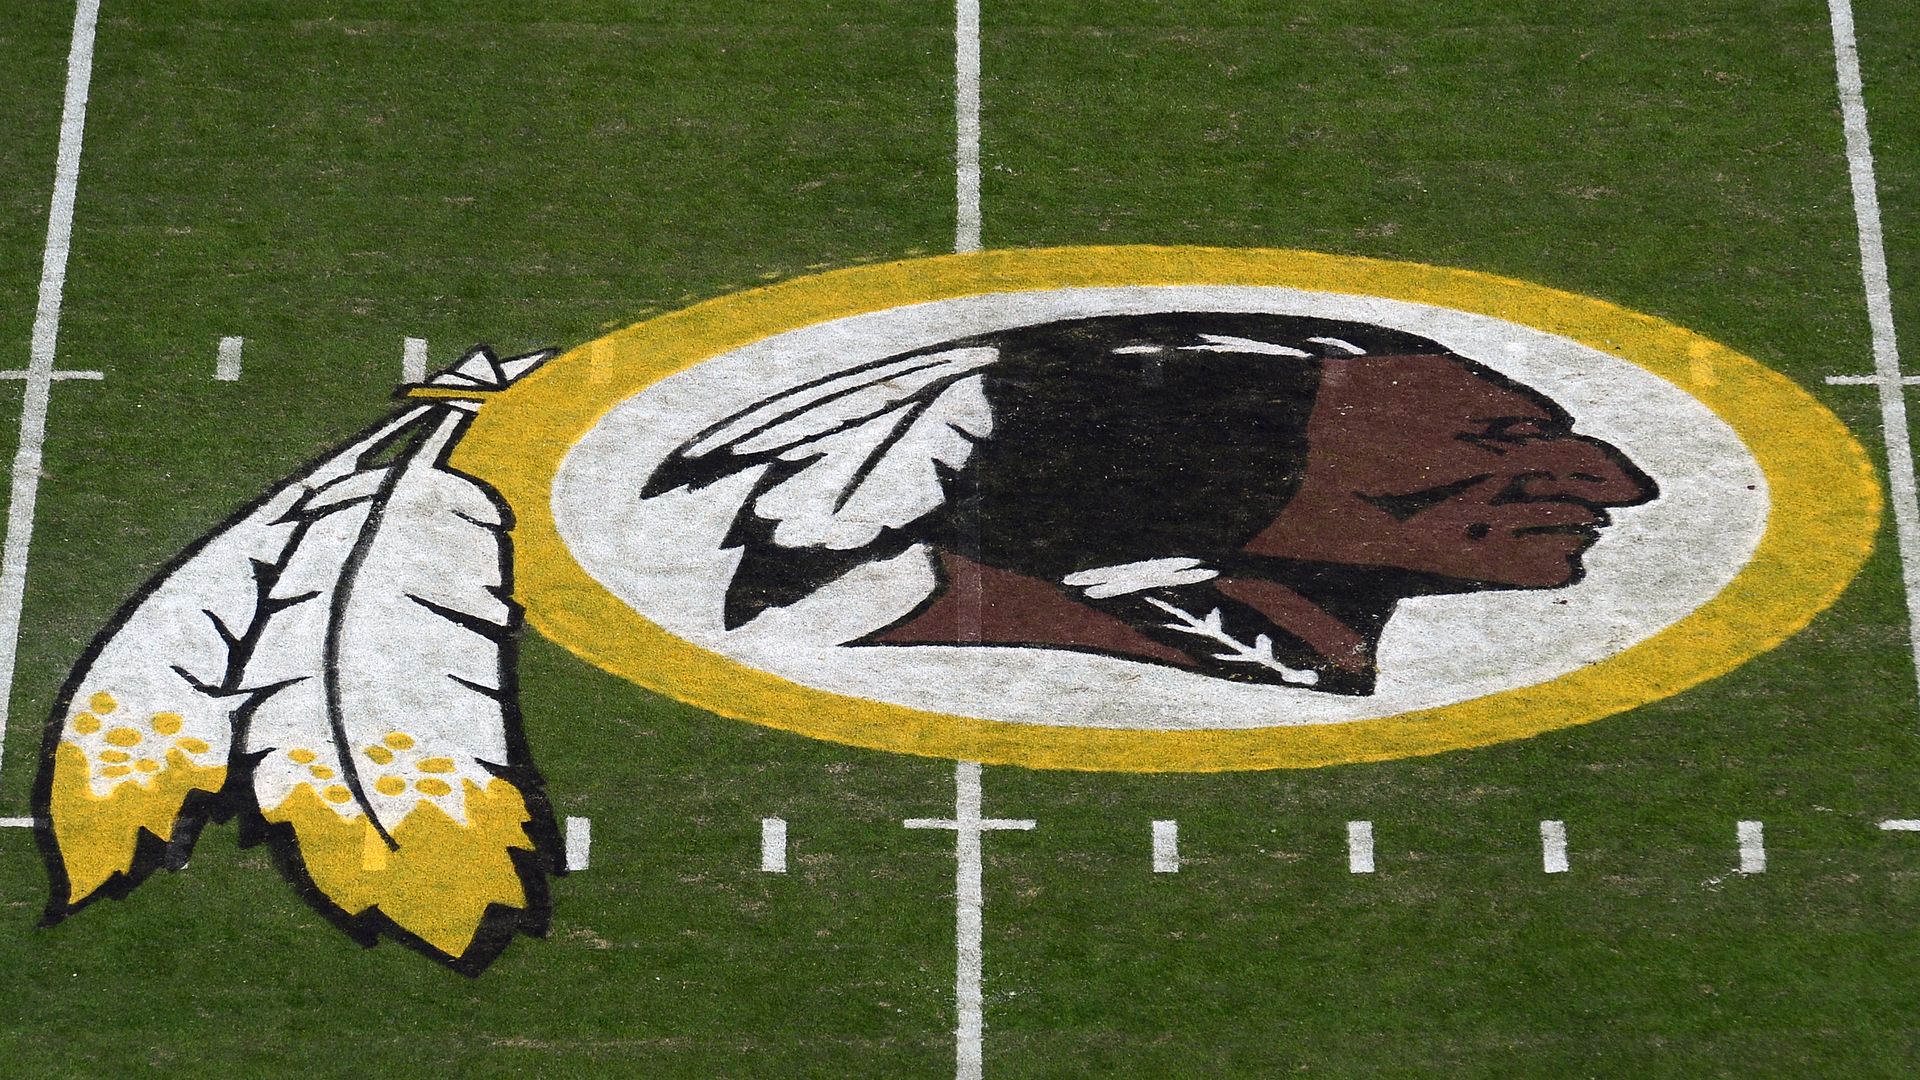 Washington Redskins will change team name